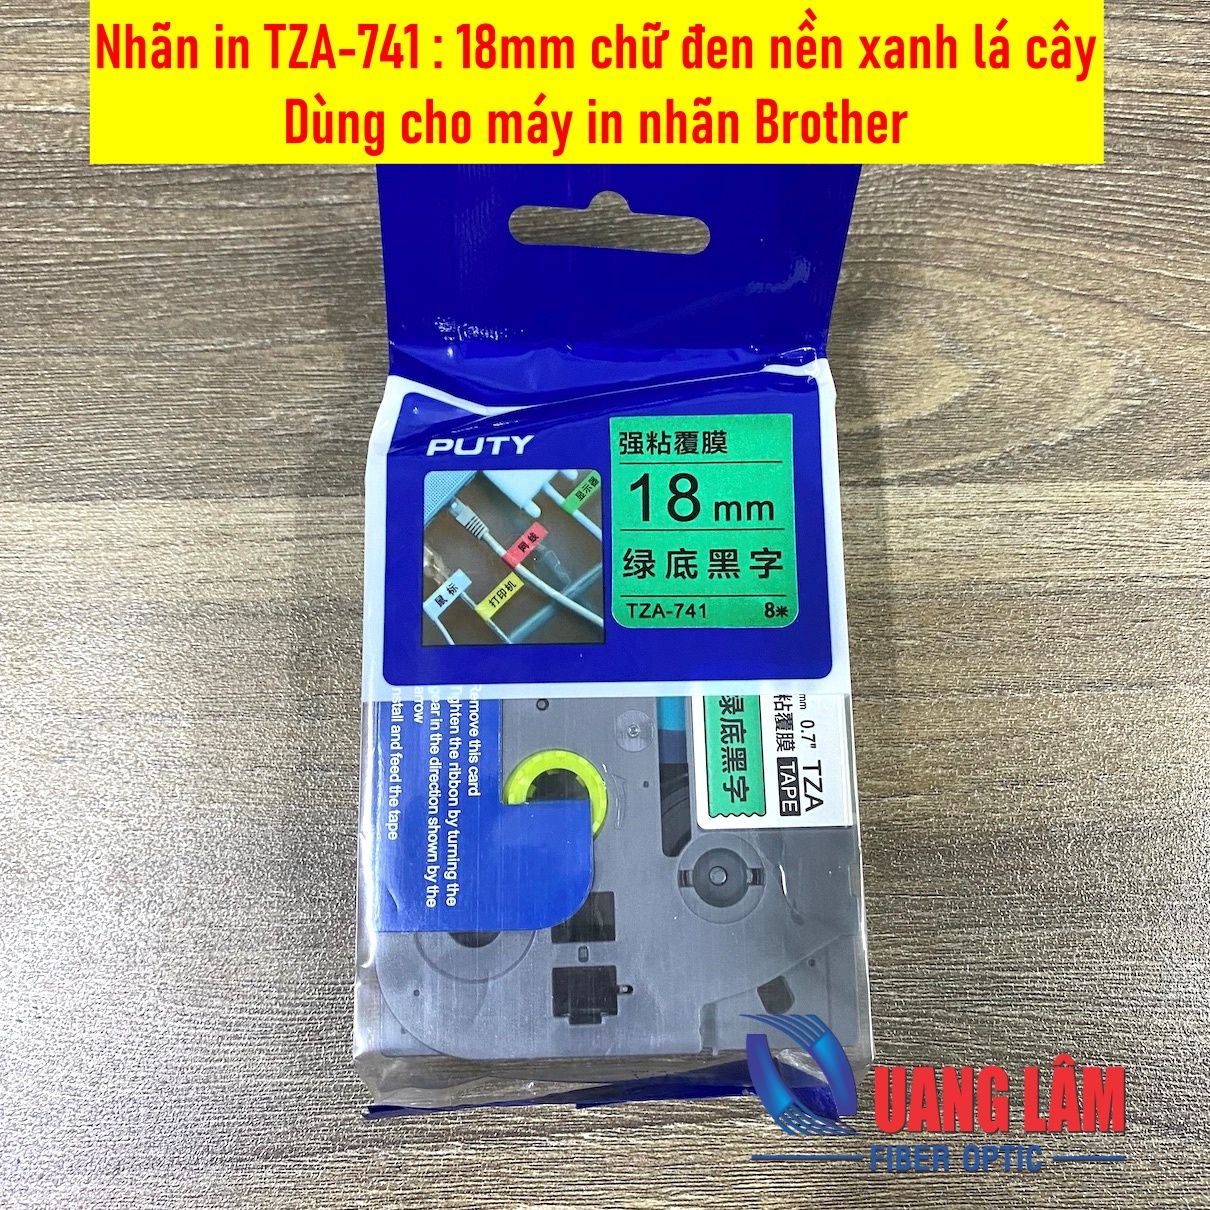 Nhãn in TZA-741, Loại tiêu chuẩn, Chữ đen trên nền xanh lá, Khổ 18mmx8M